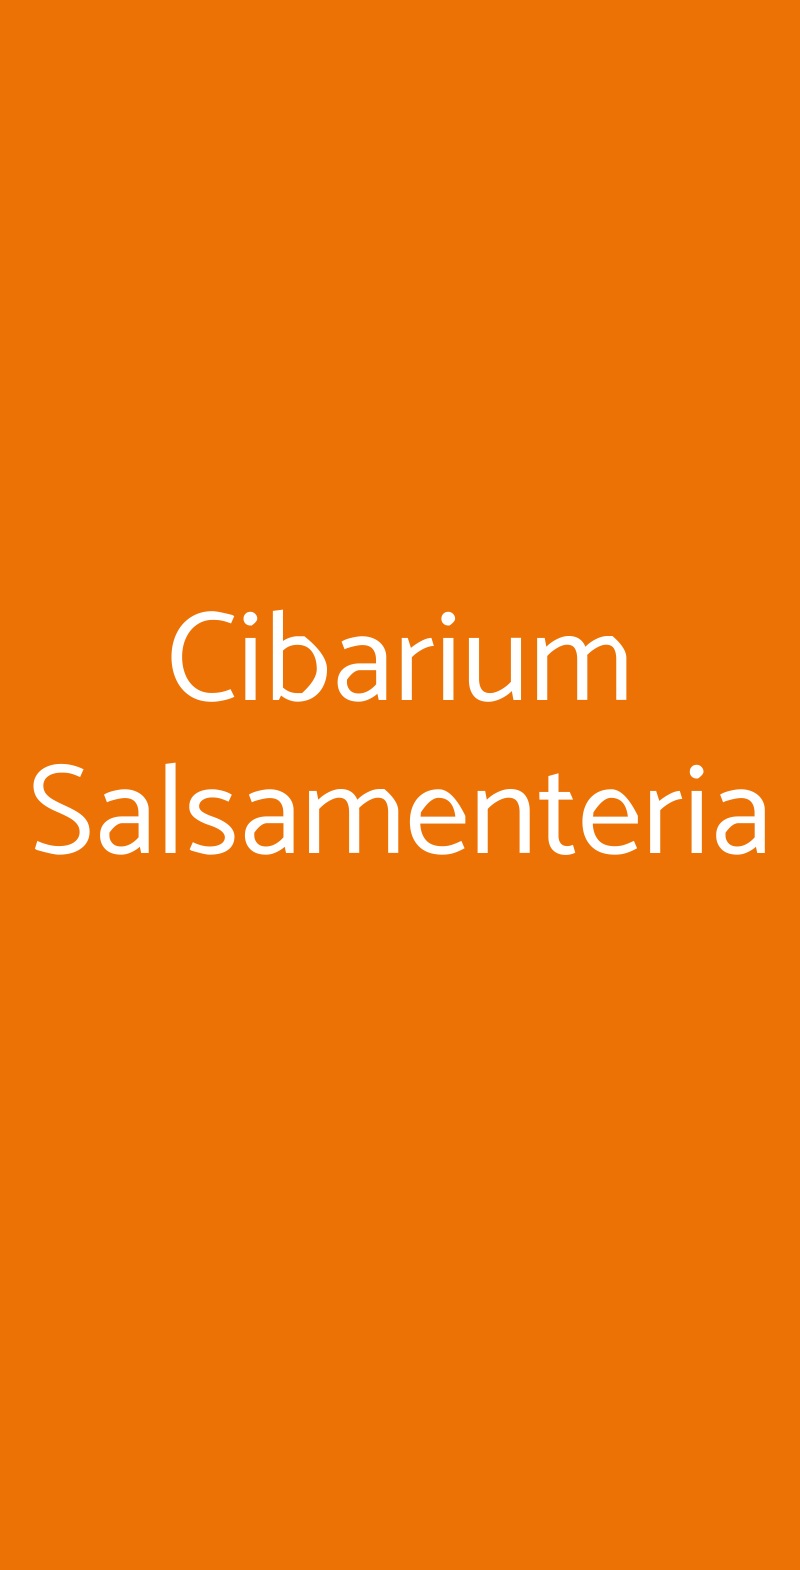 Cibarium Salsamenteria Fontanellato menù 1 pagina